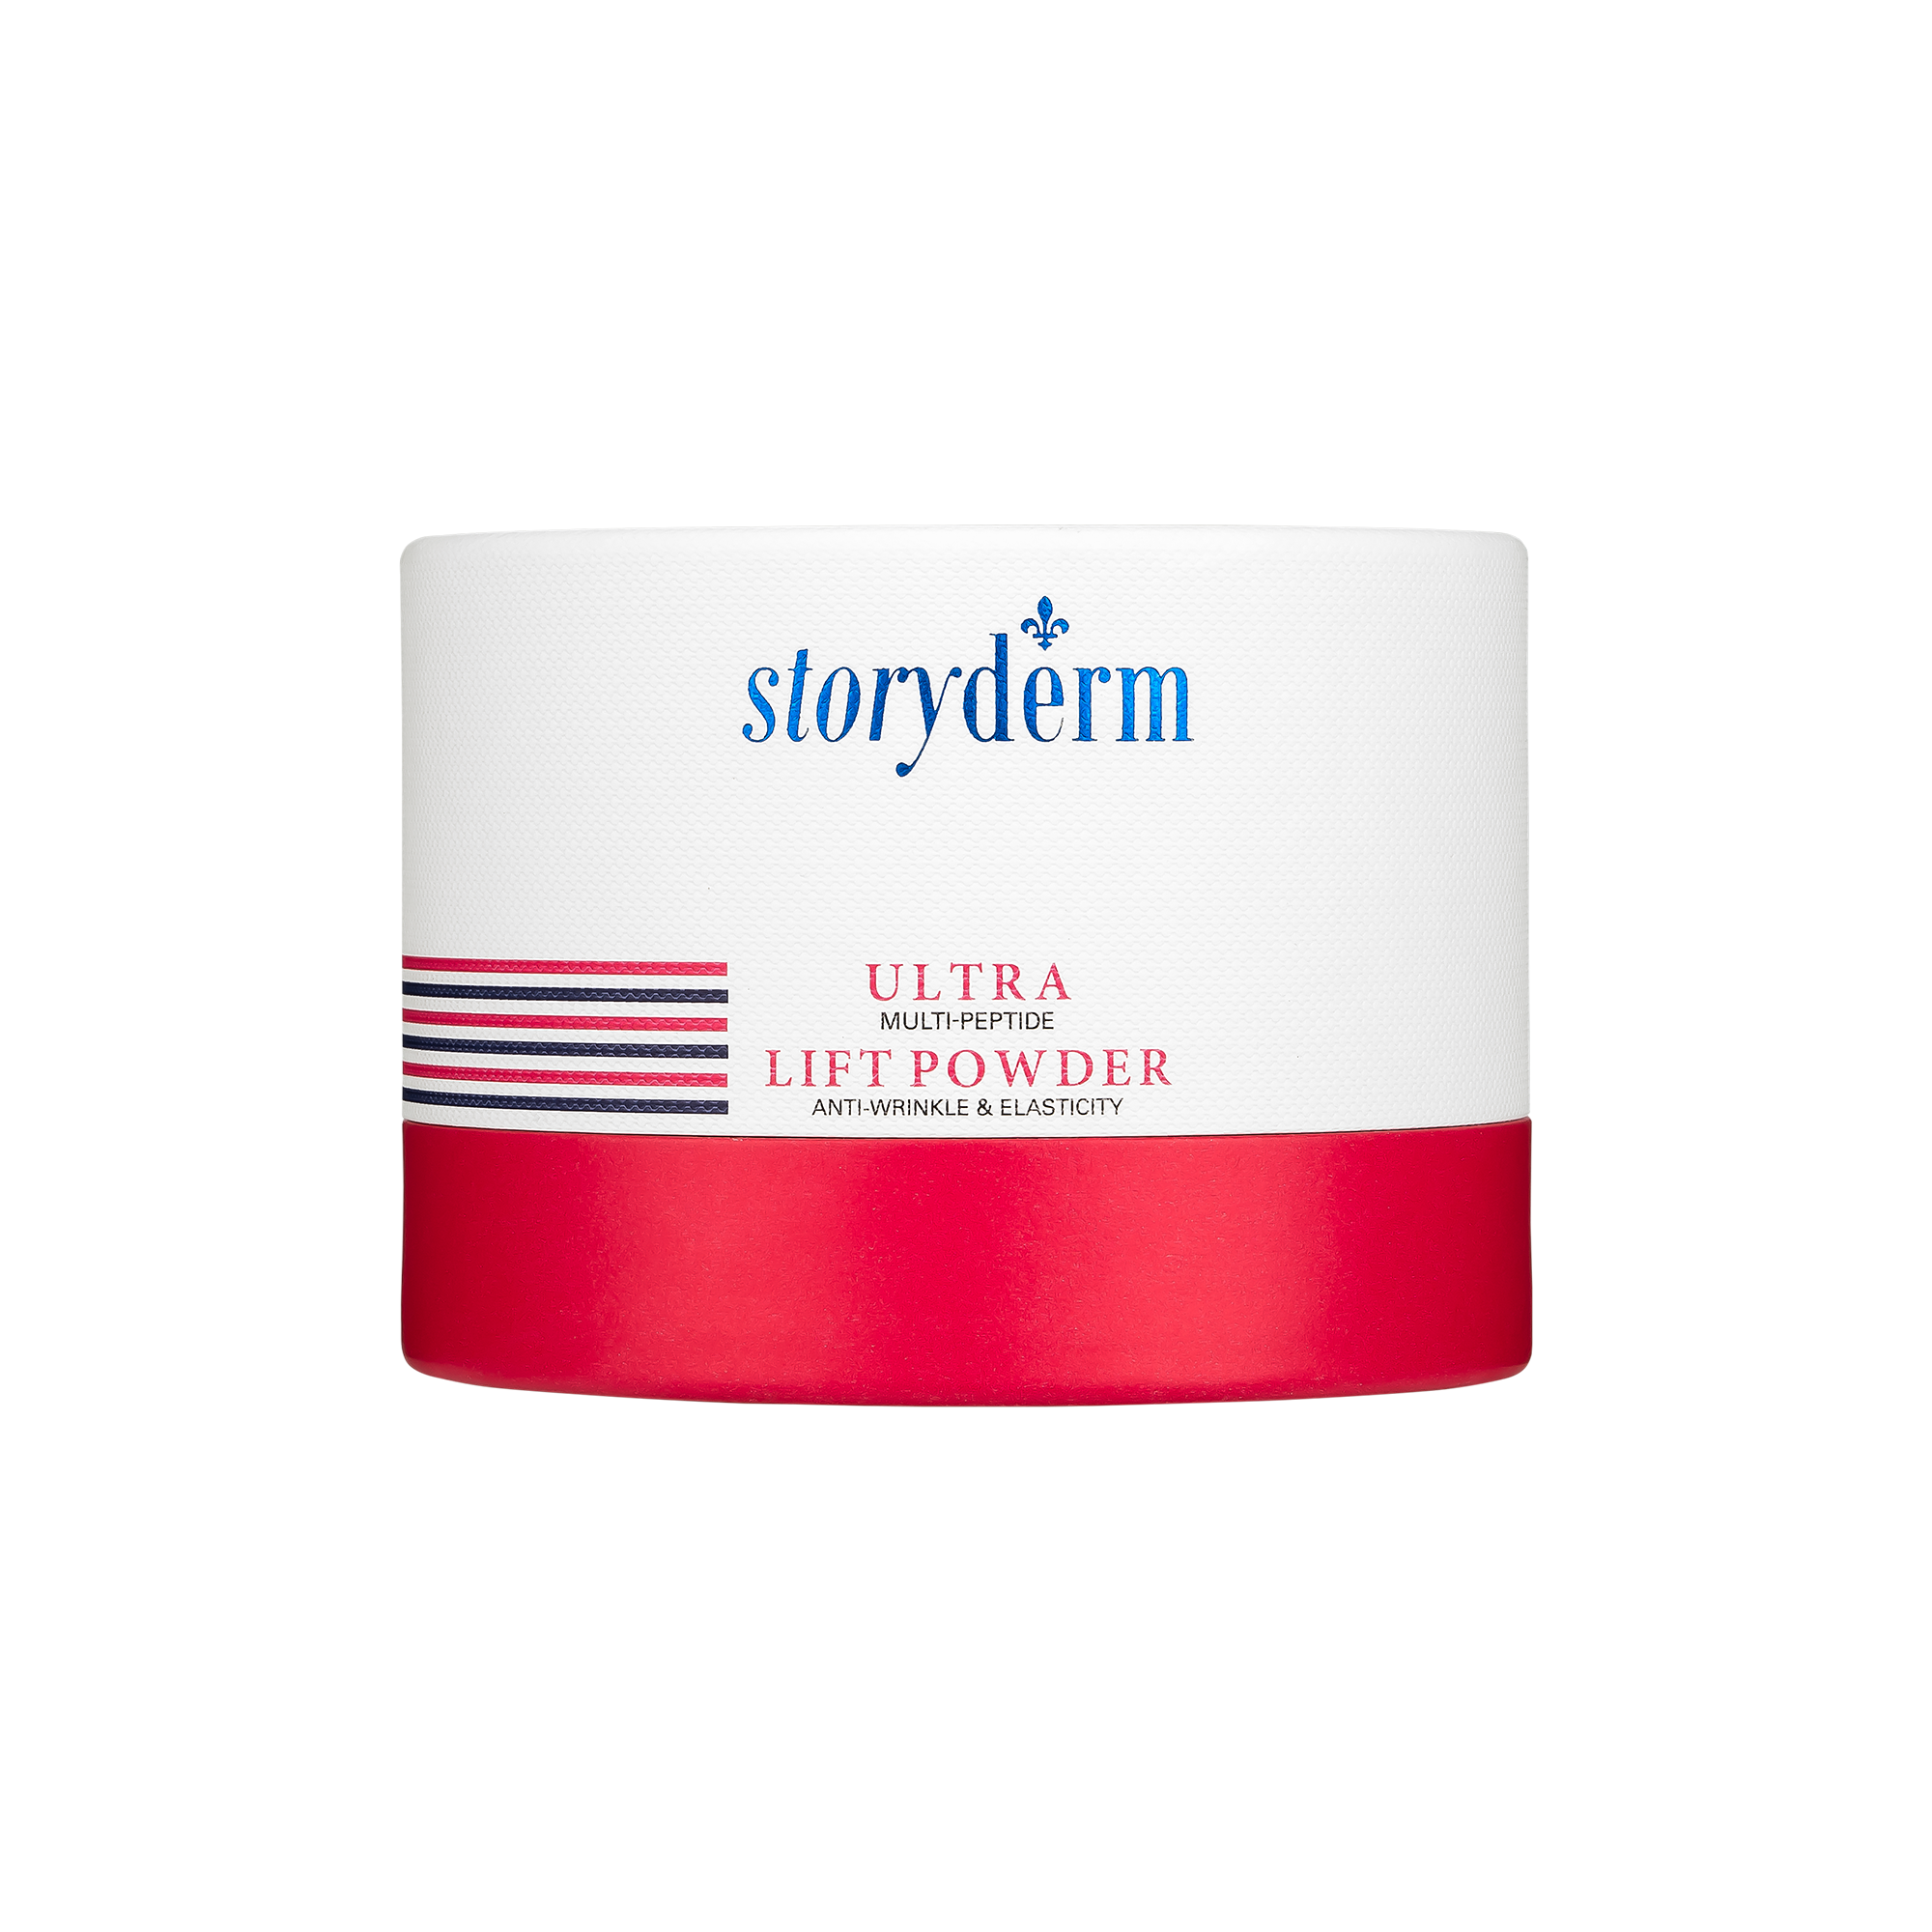 Набор масок с лифтинг эффектом Storyderm Ultra Lift Powder, 4 шт по 1,5г пудра компактная для лица bell ultra blurring powder тон 01 с эффектом блюра